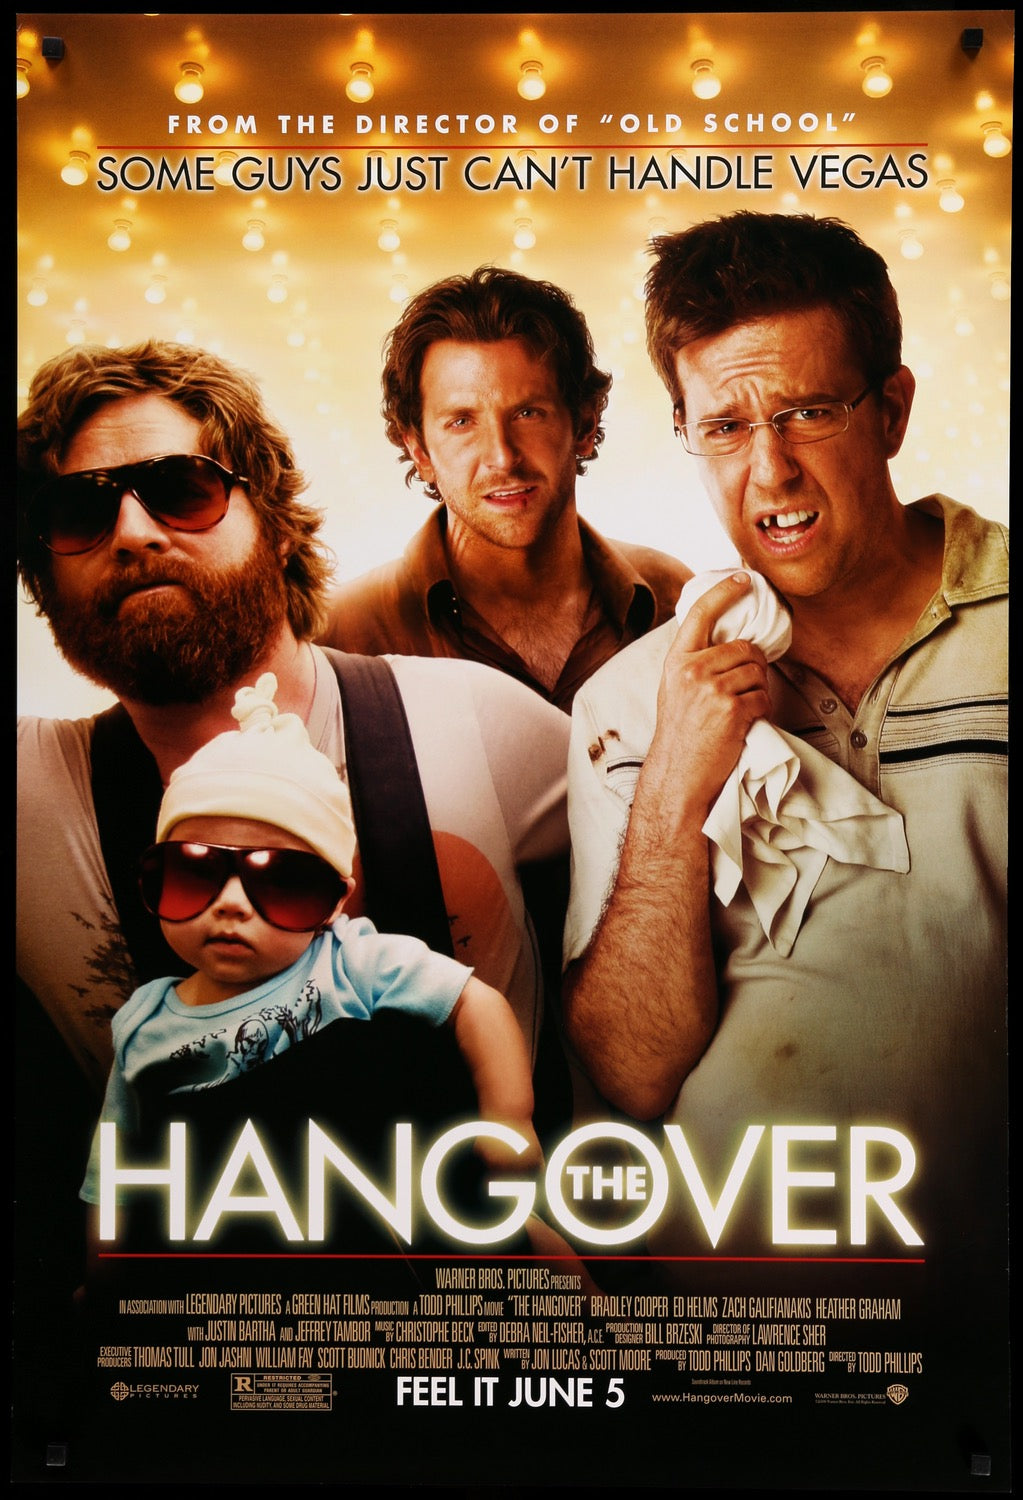 Hangover (2009) original movie poster for sale at Original Film Art